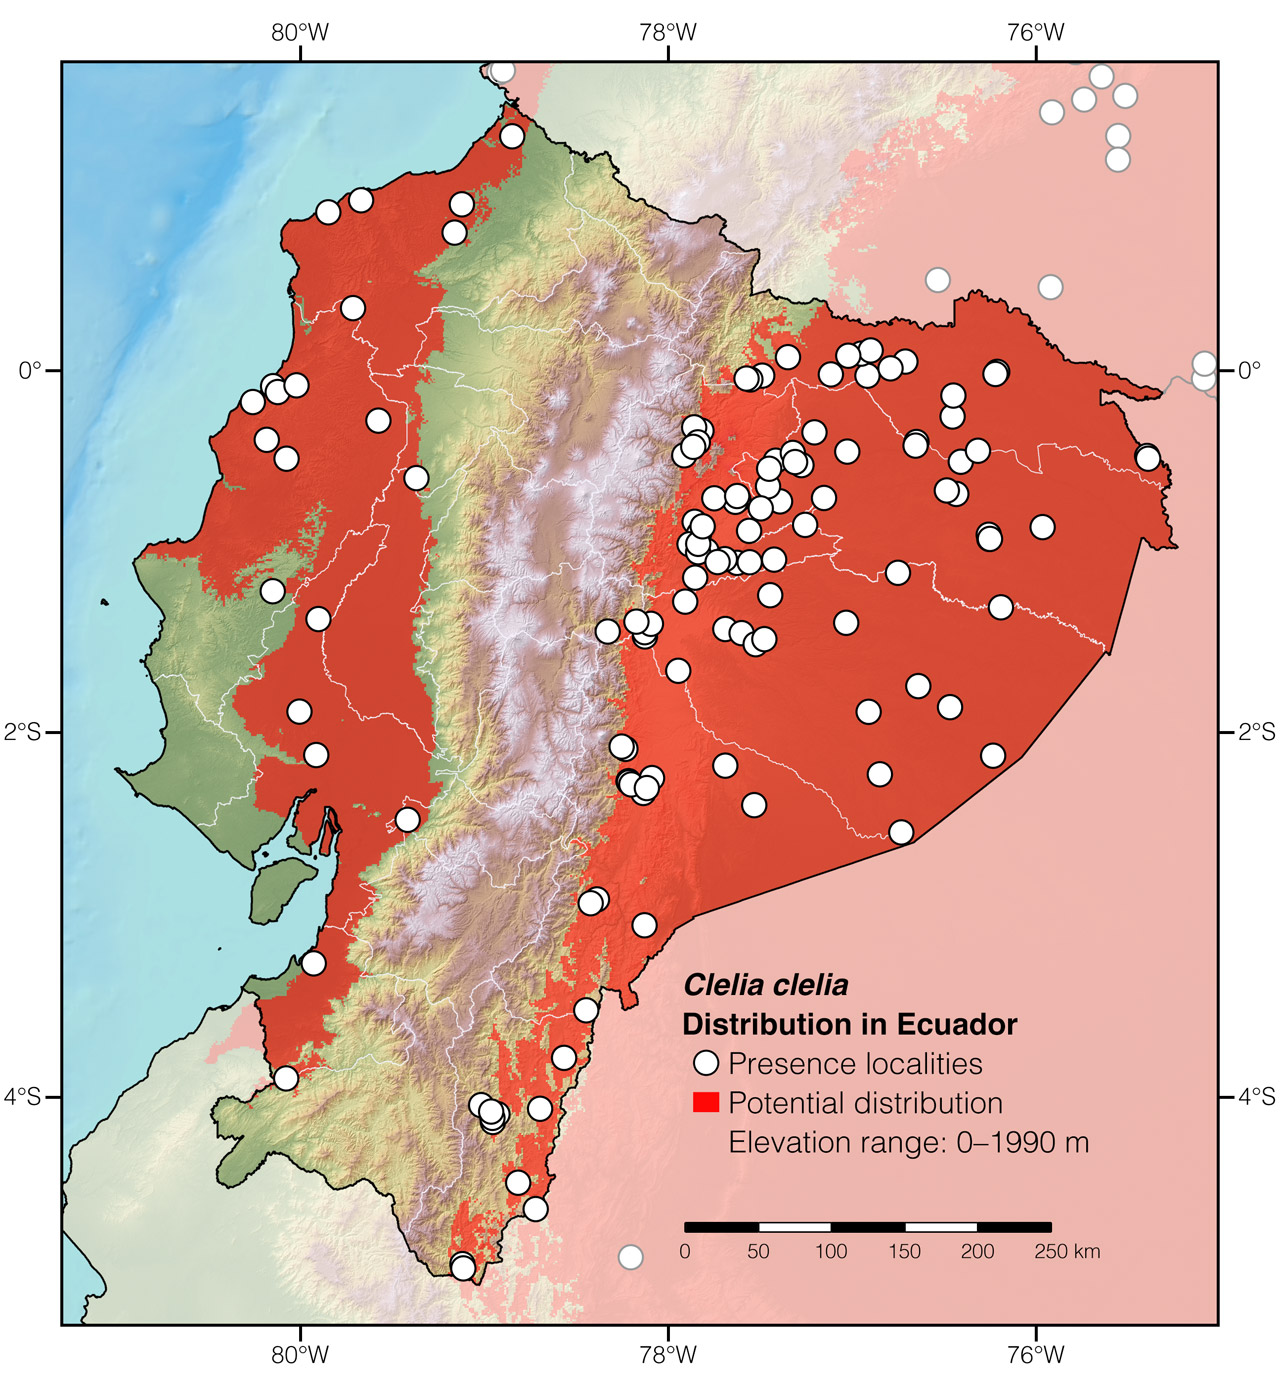 Distribution of Clelia clelia in Ecuador